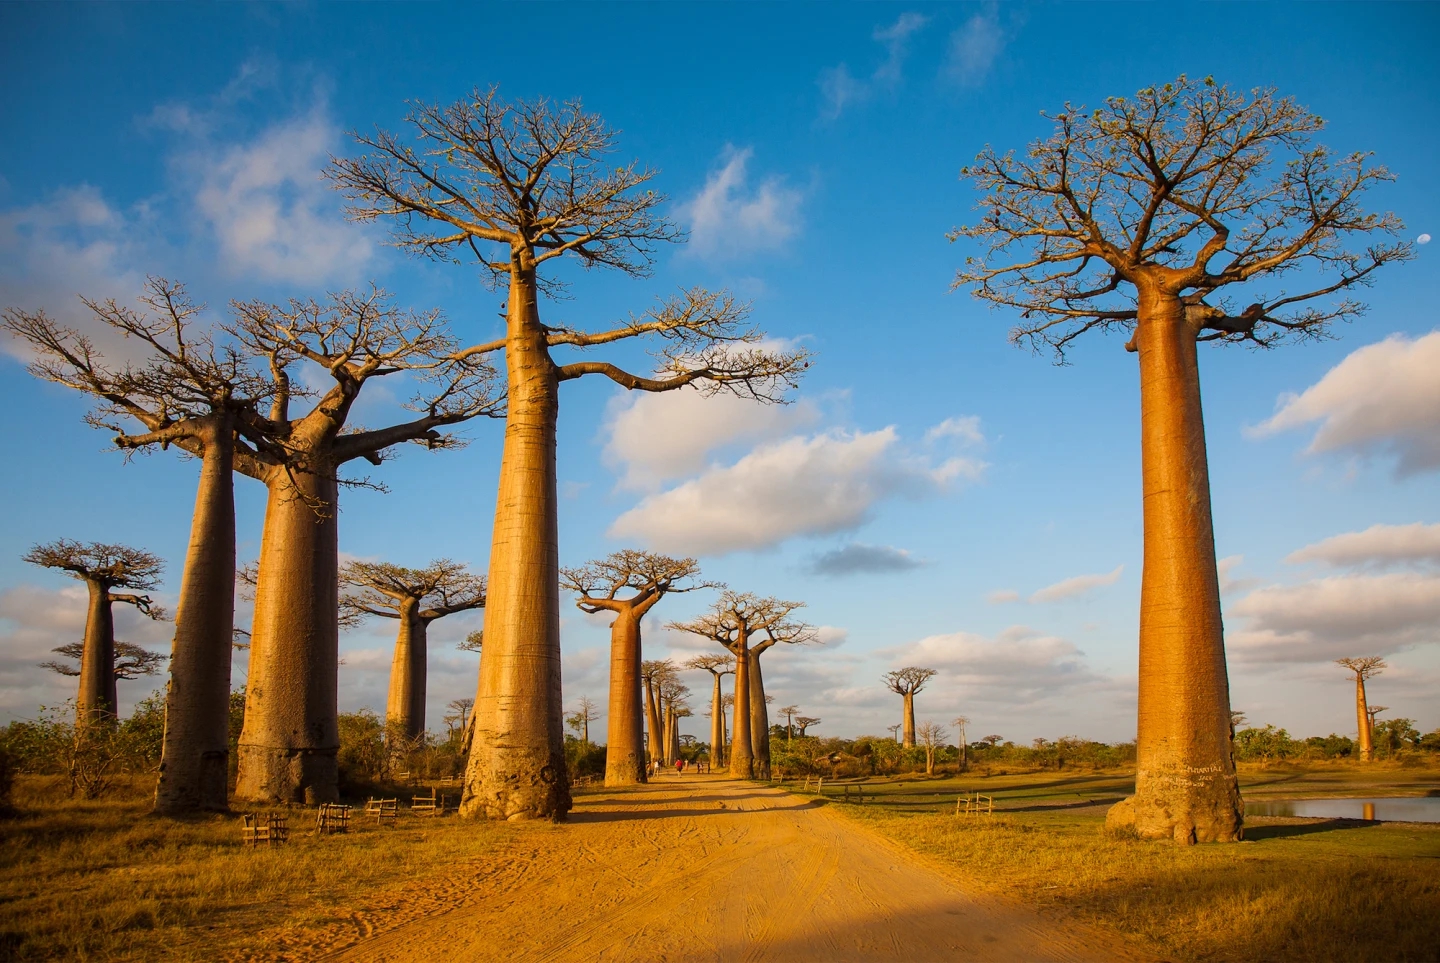 10 khu rừng cổ đại tuyệt đẹp còn tồn tại trên thế giới